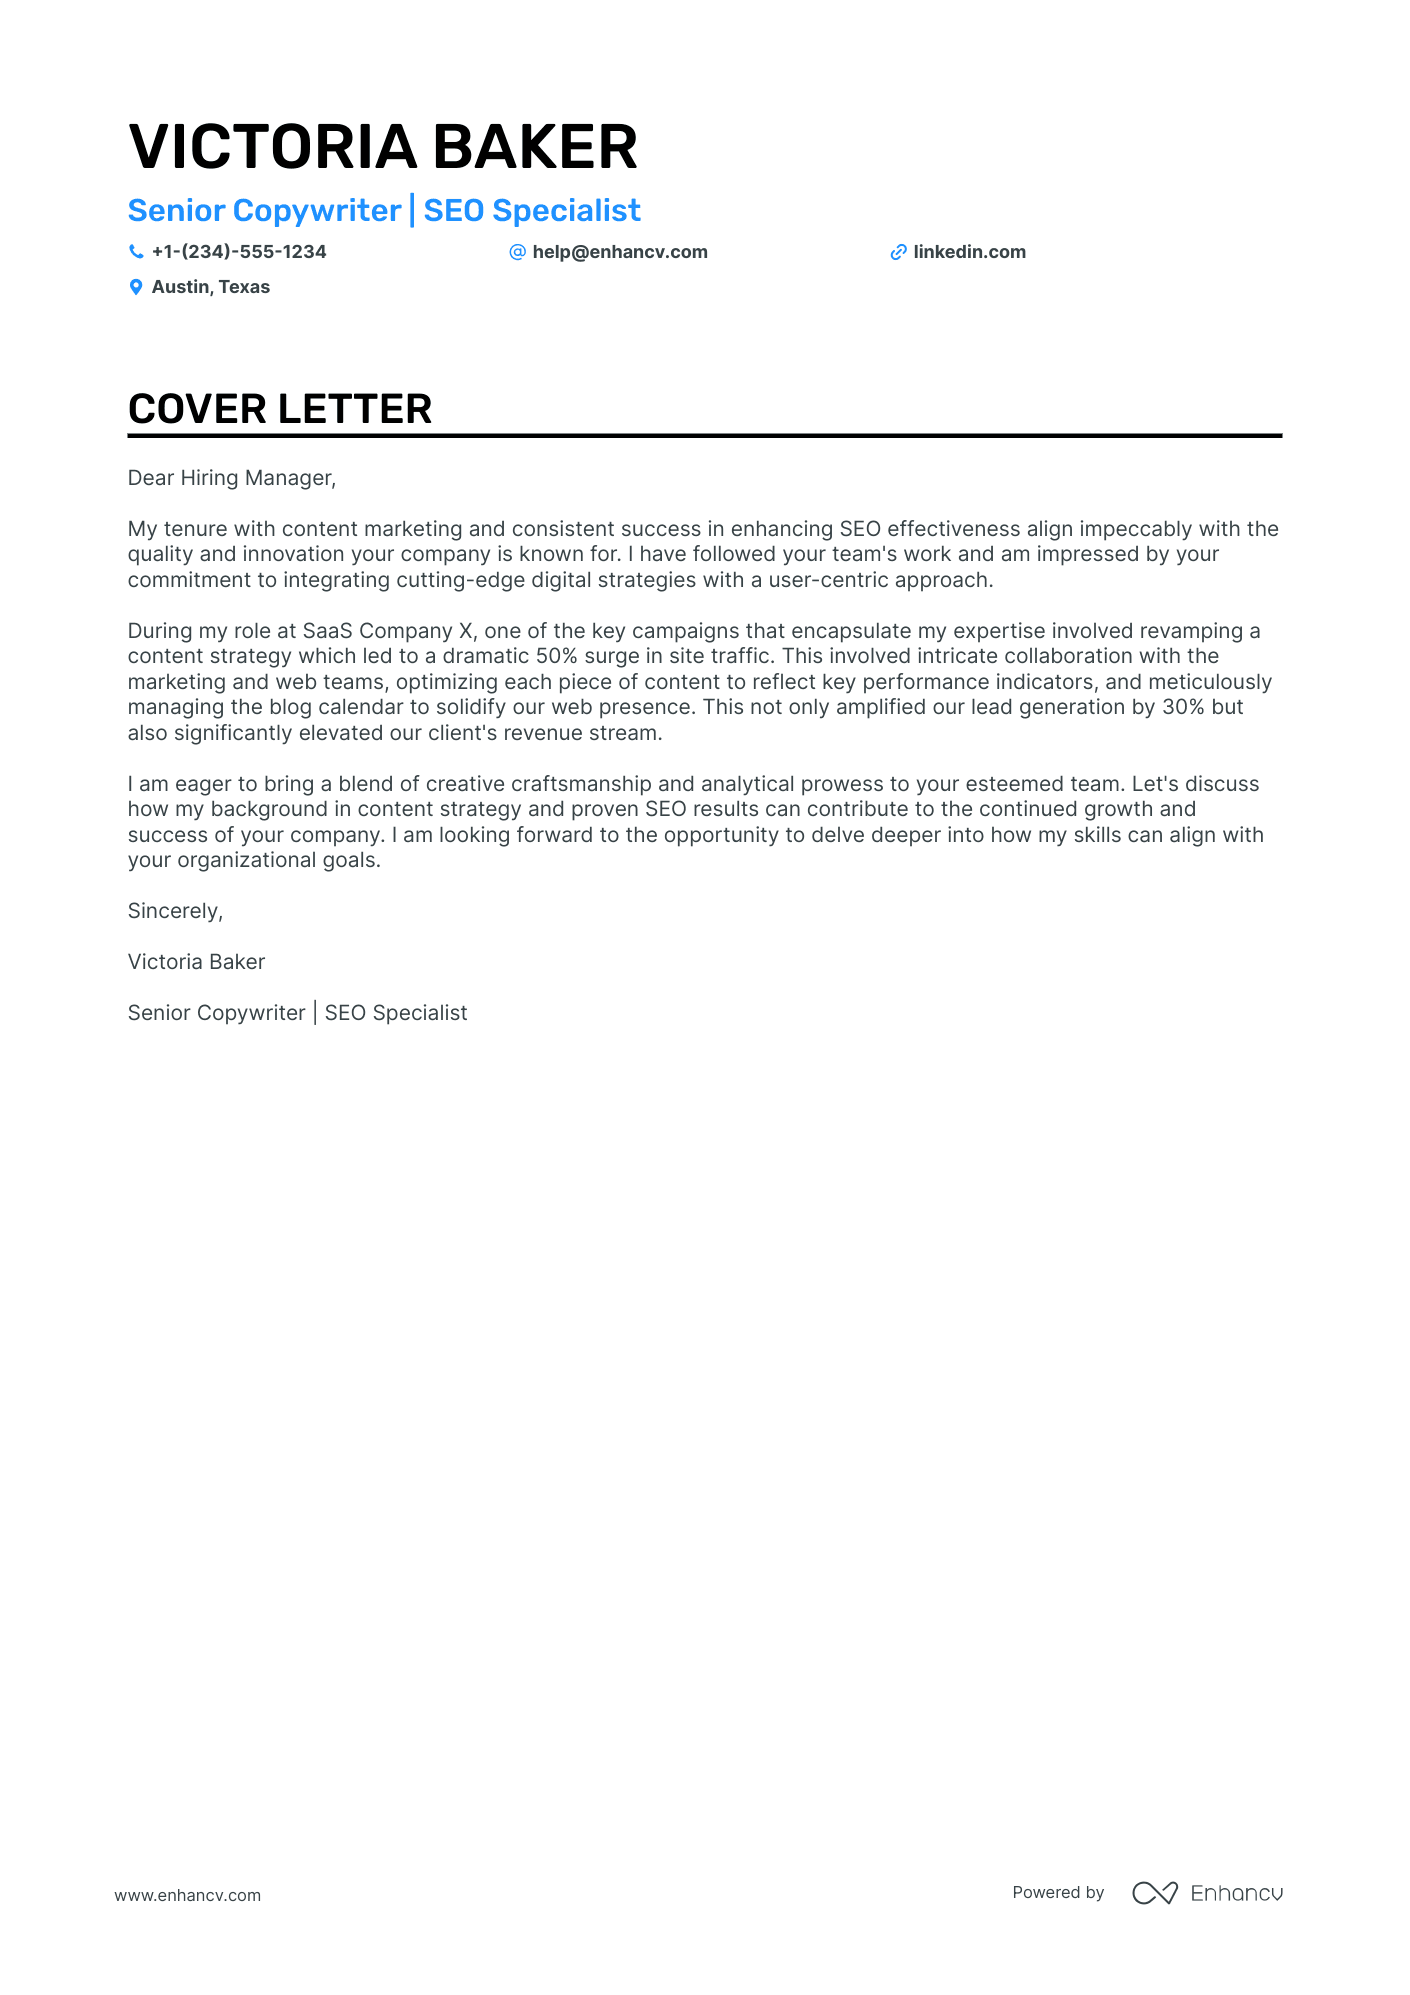 cover letter for copywriter